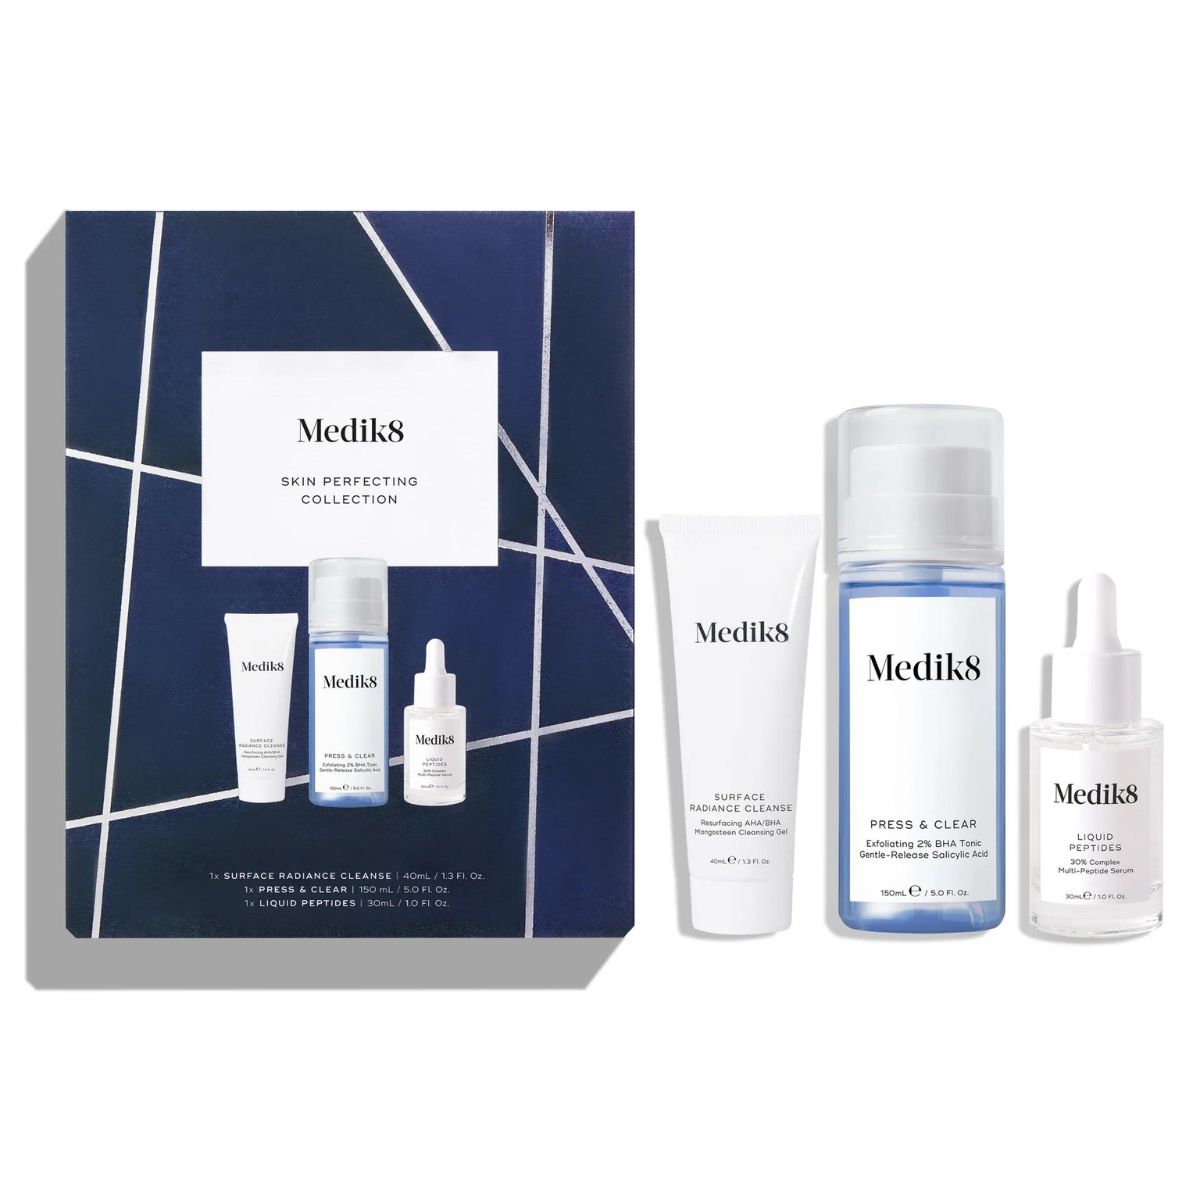 Medik8 Skin Perfecting Collection Gift Set